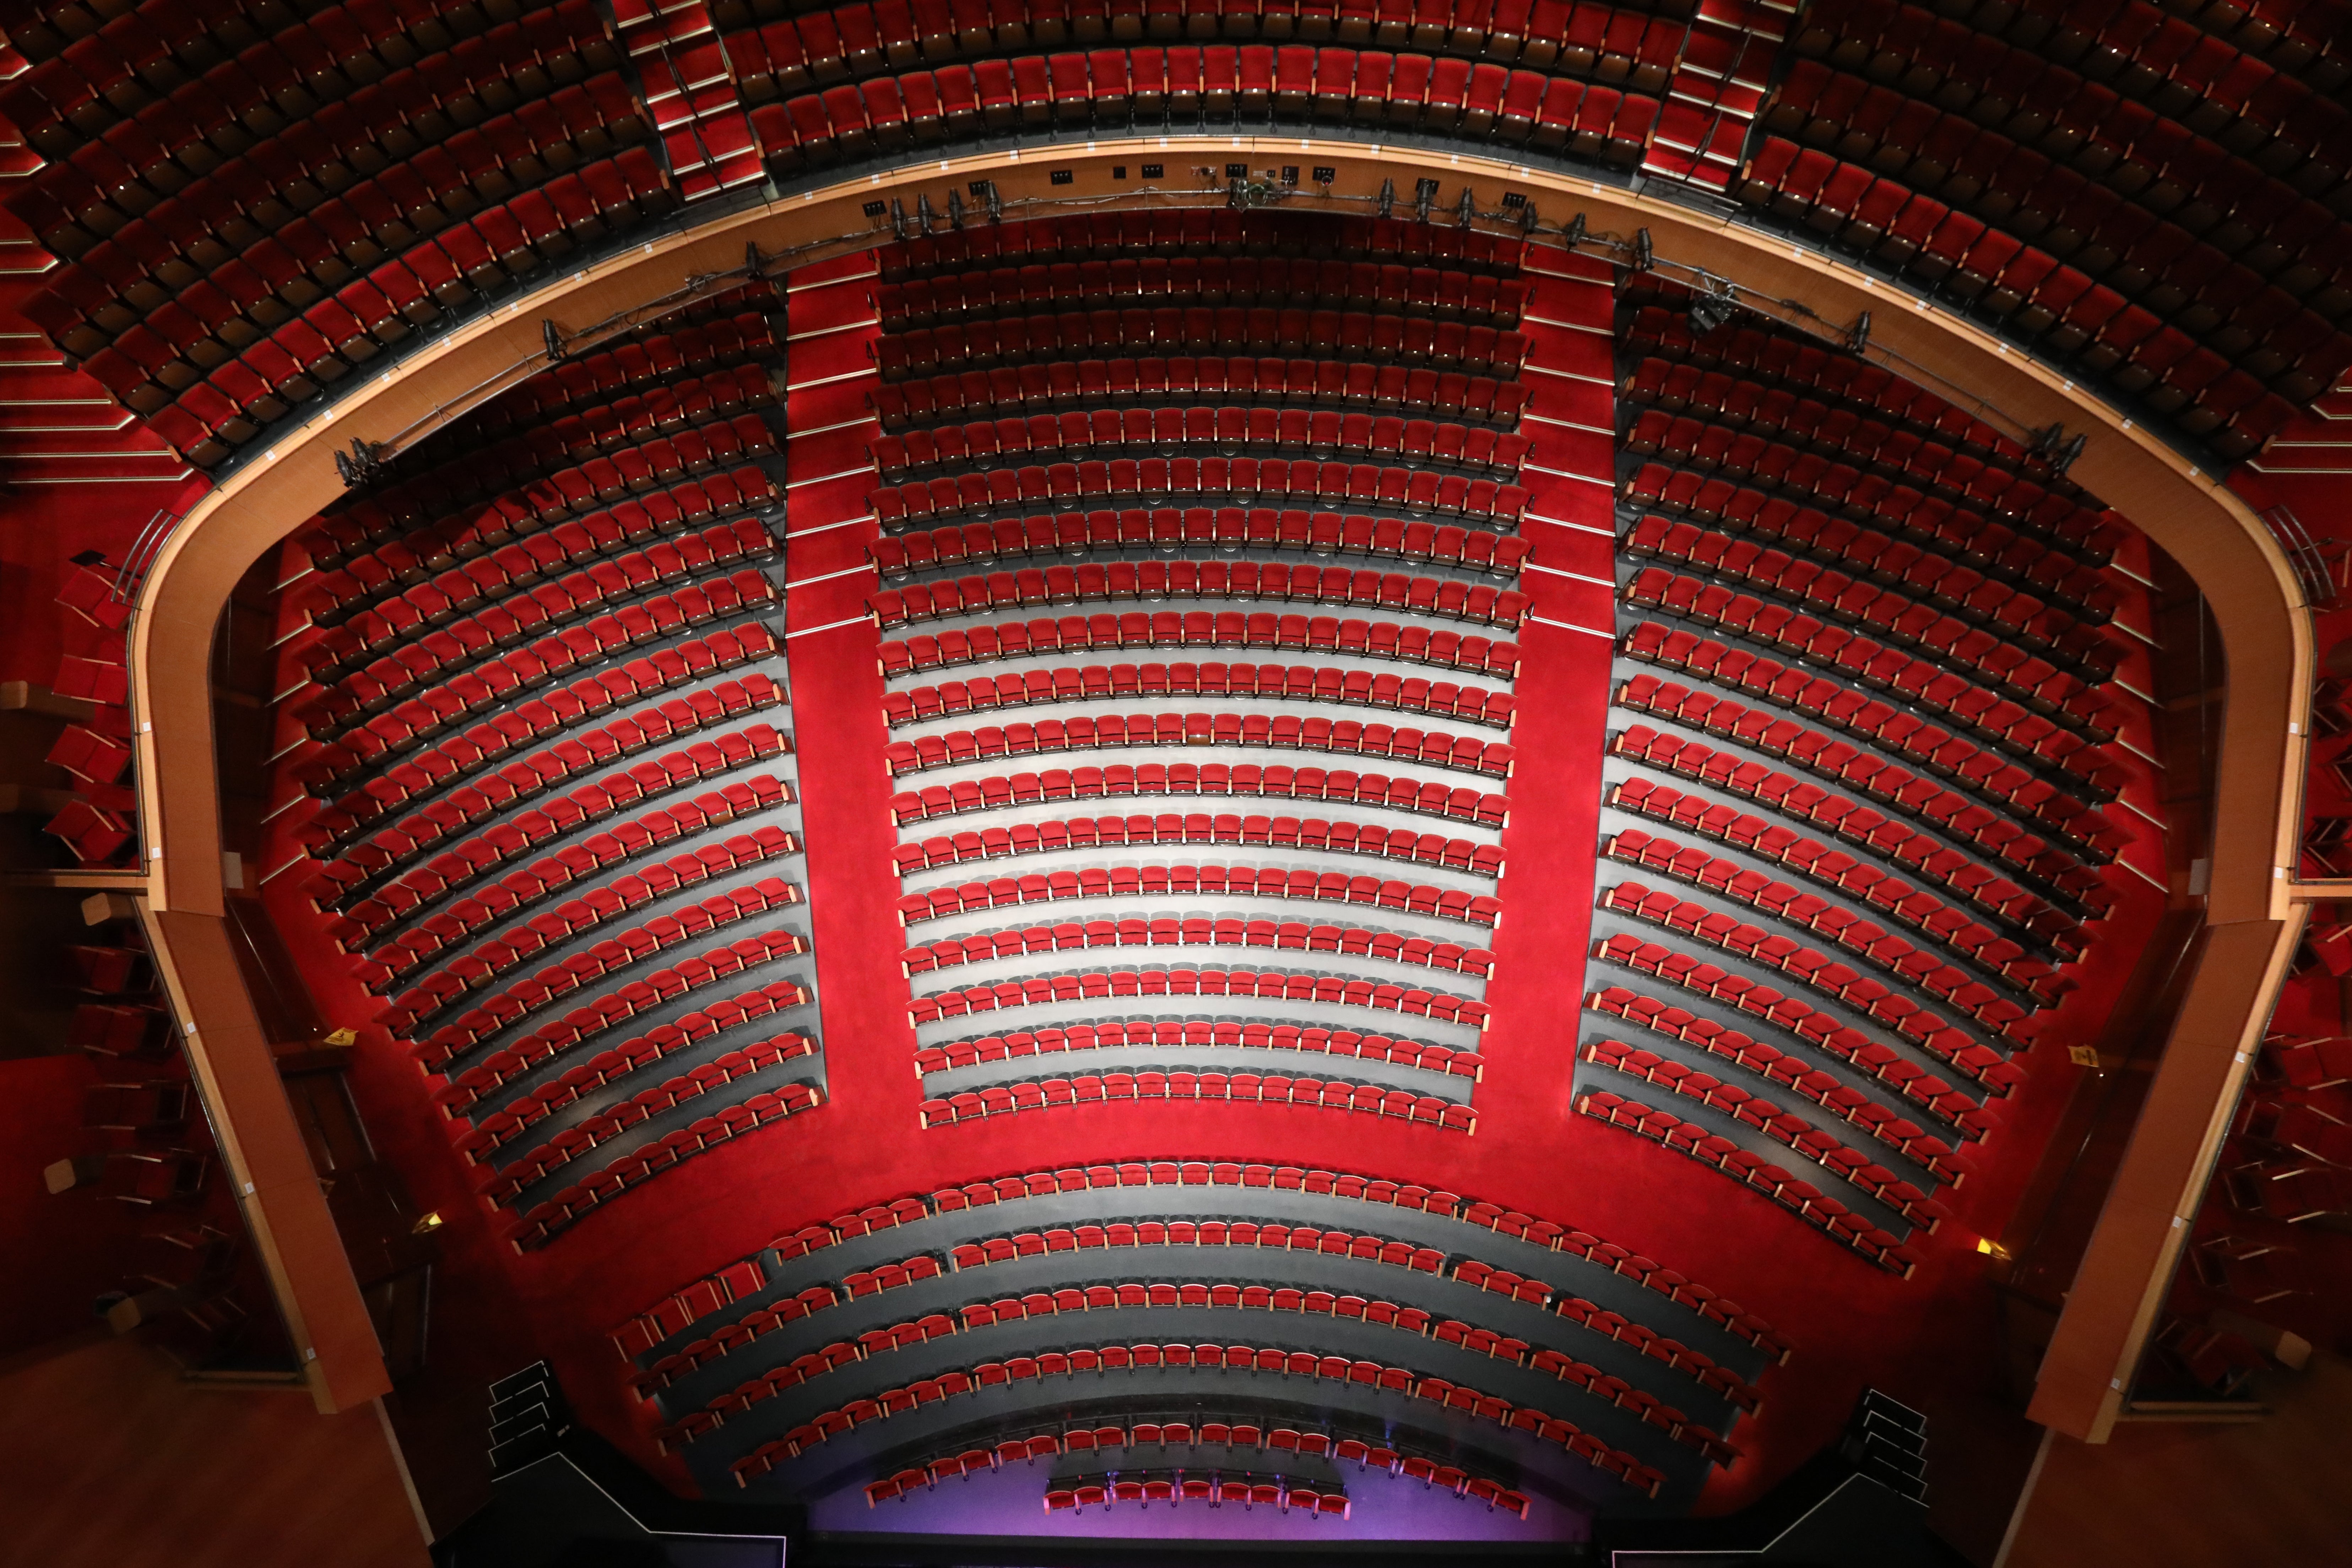 Carolina Performing Arts Seating Chart